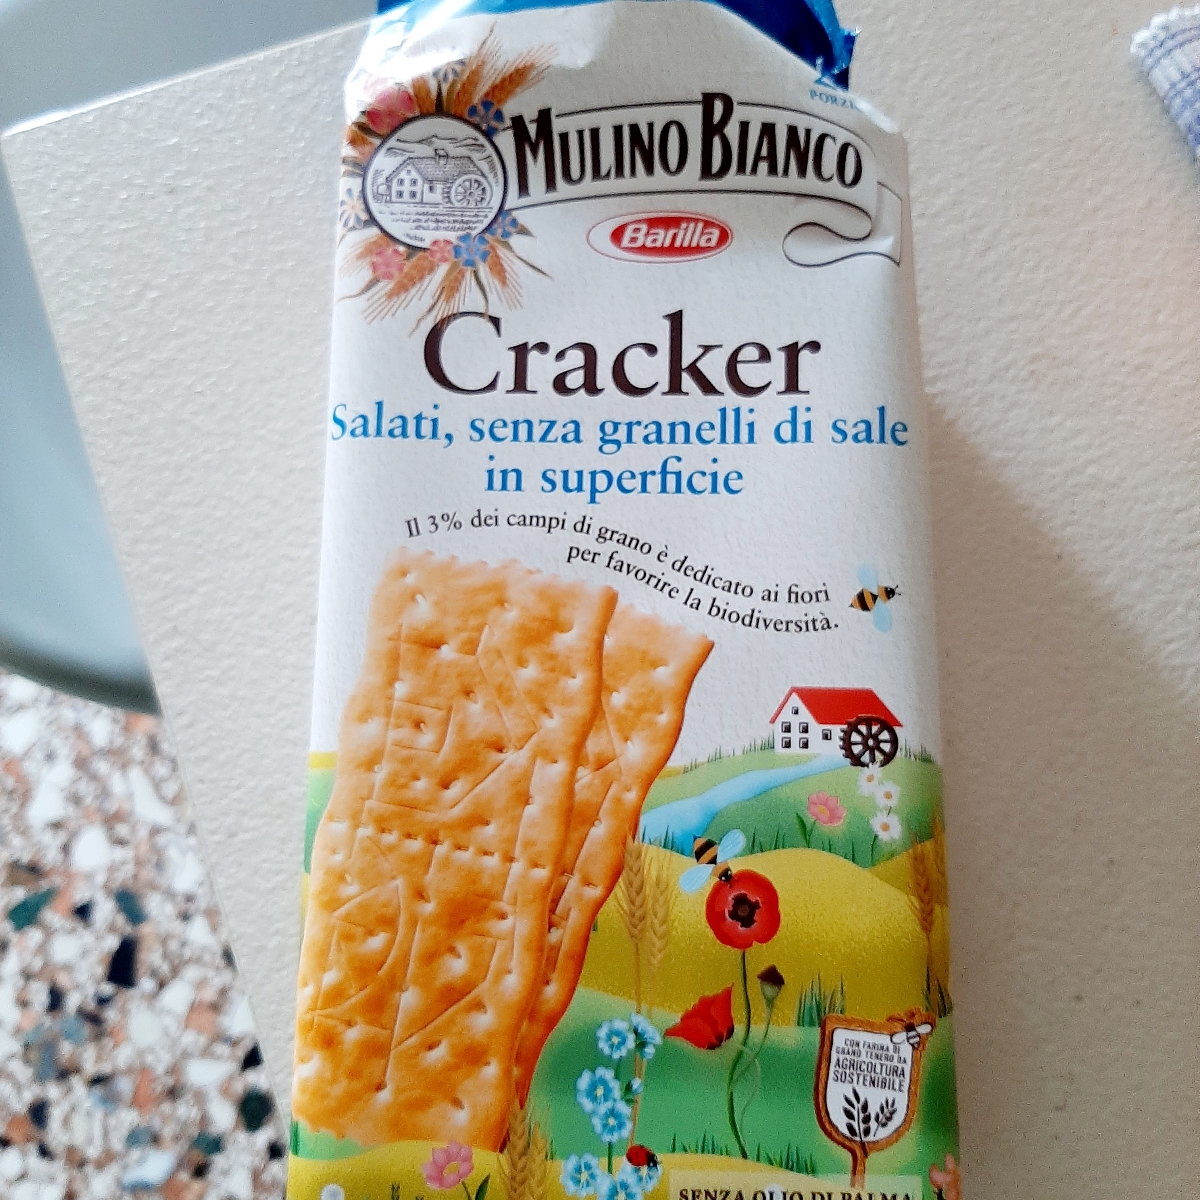 Mulino Bianco Cracker Salati, senza granelli di sale in superficie Reviews